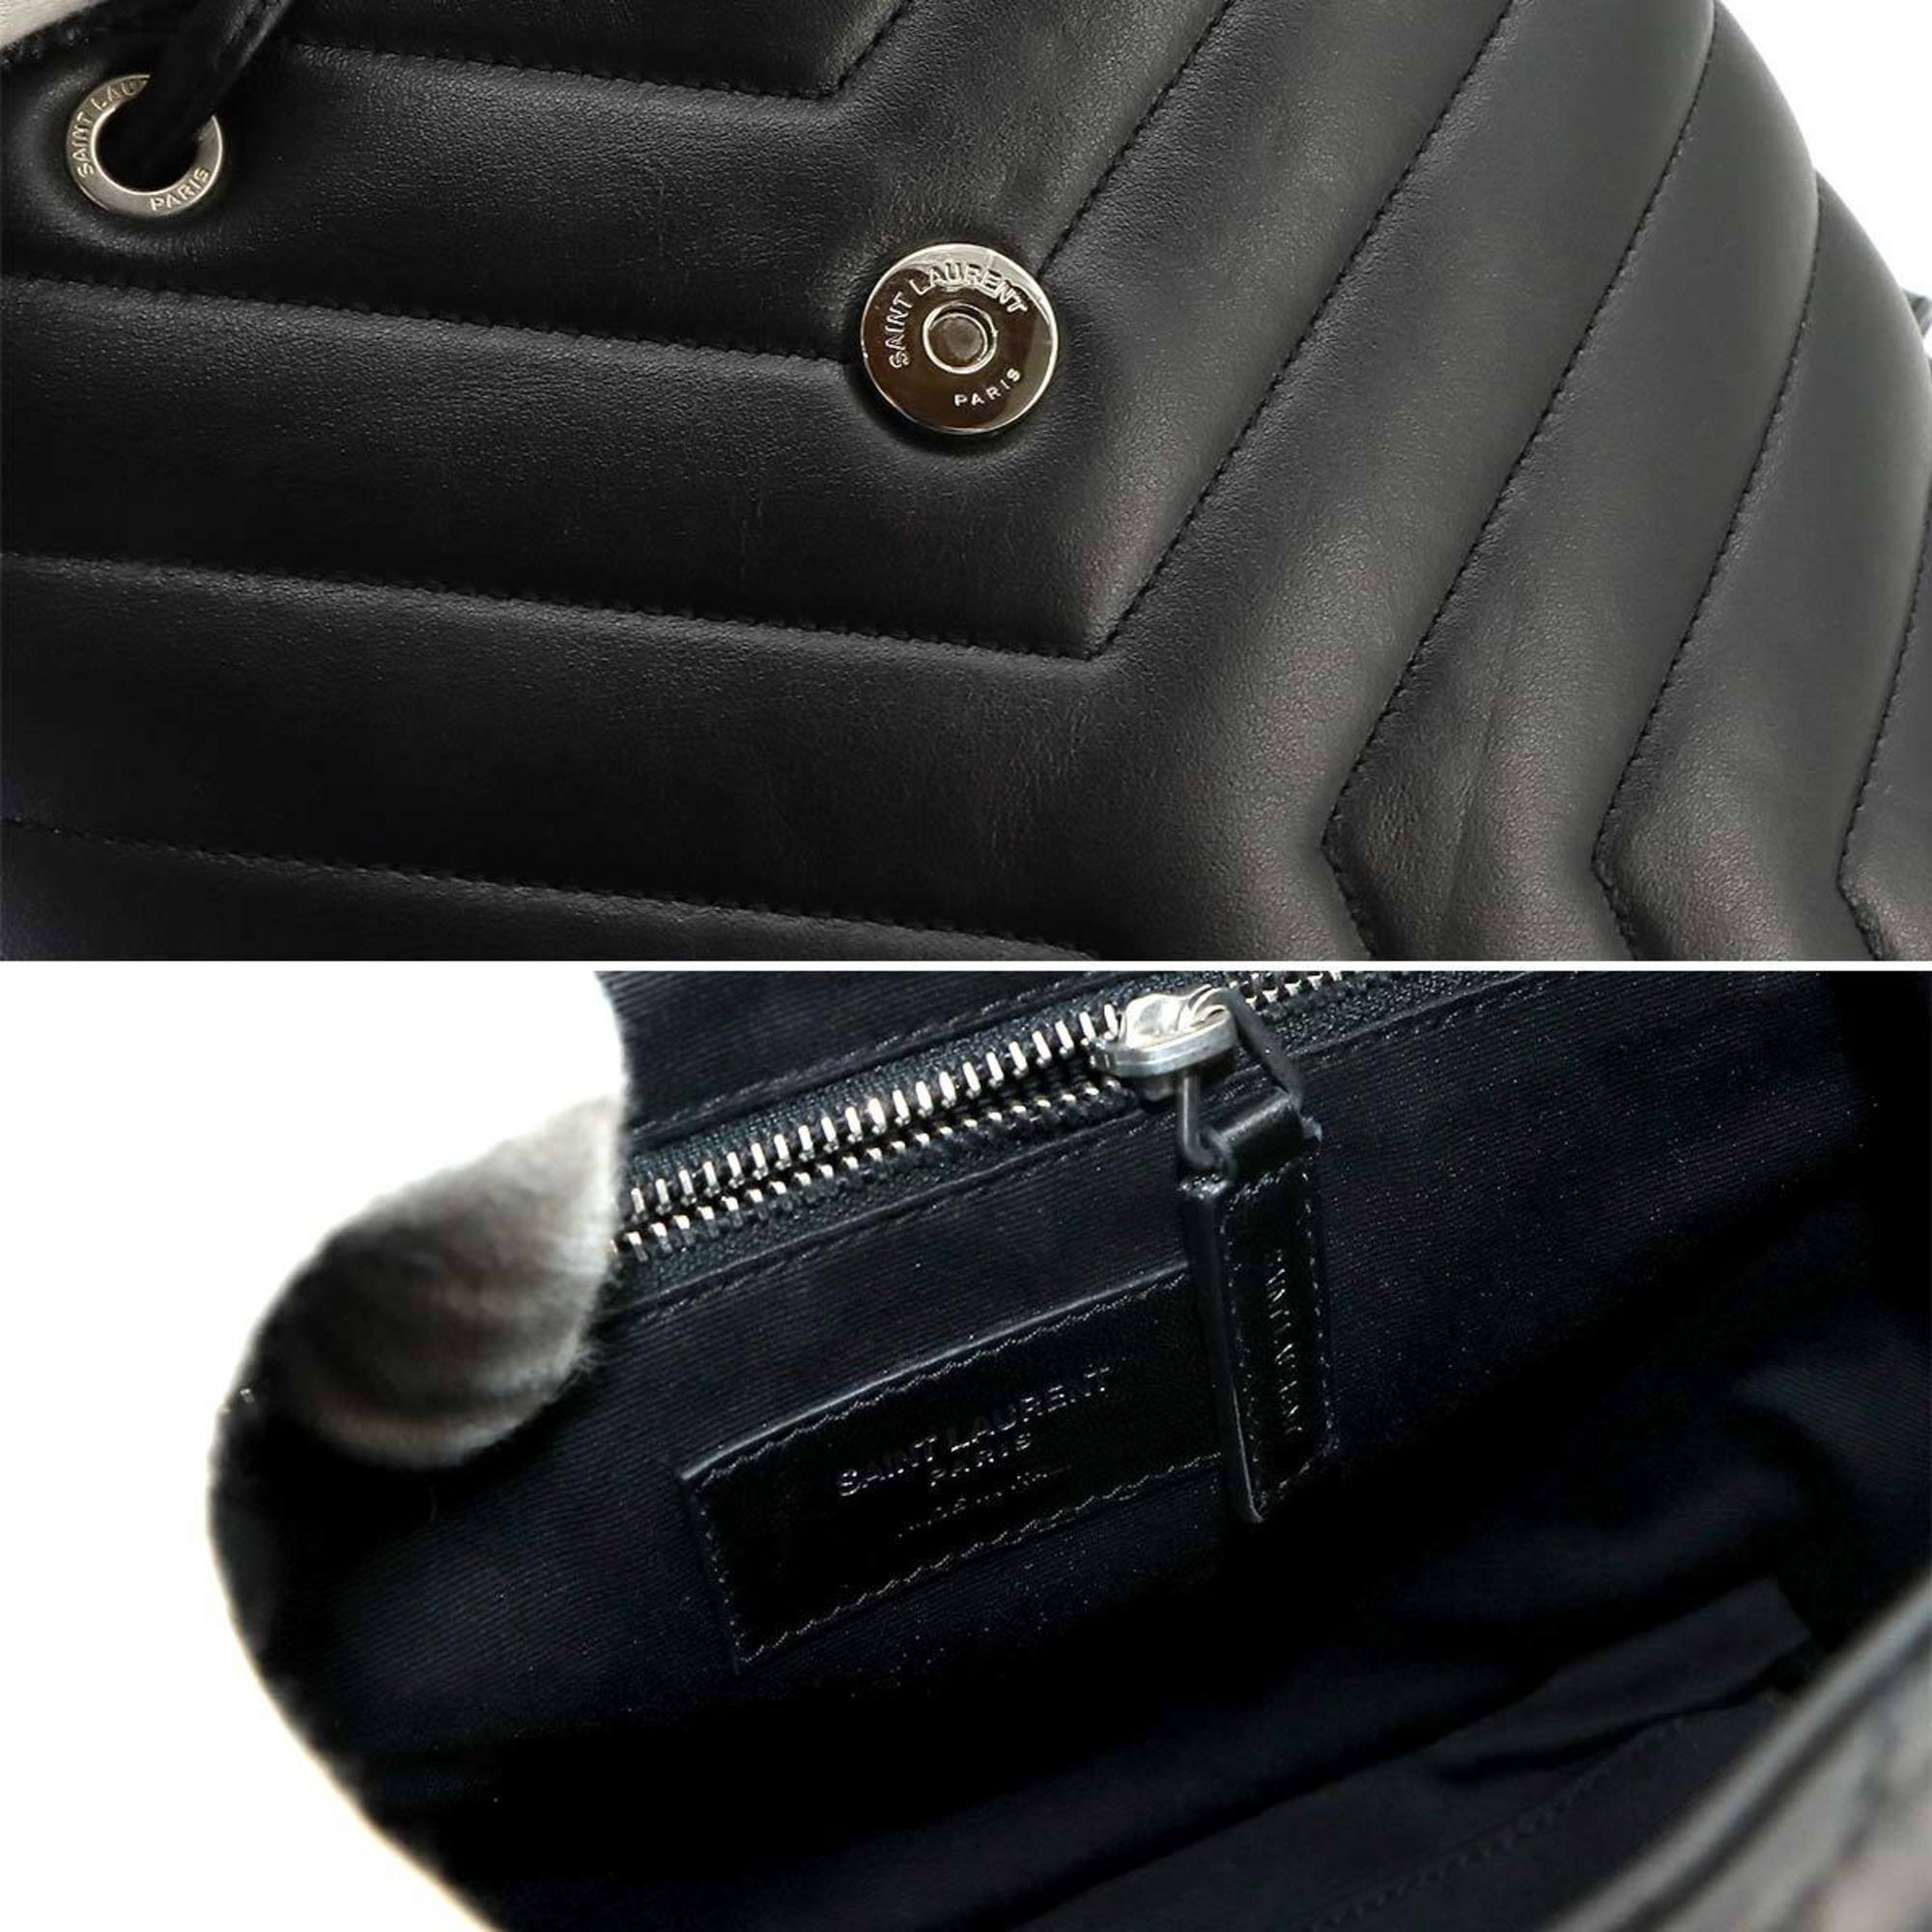 Yves Saint Laurent Saint Laurent Paris Loulou Backpack Leather Black 487220 Silver Hardware